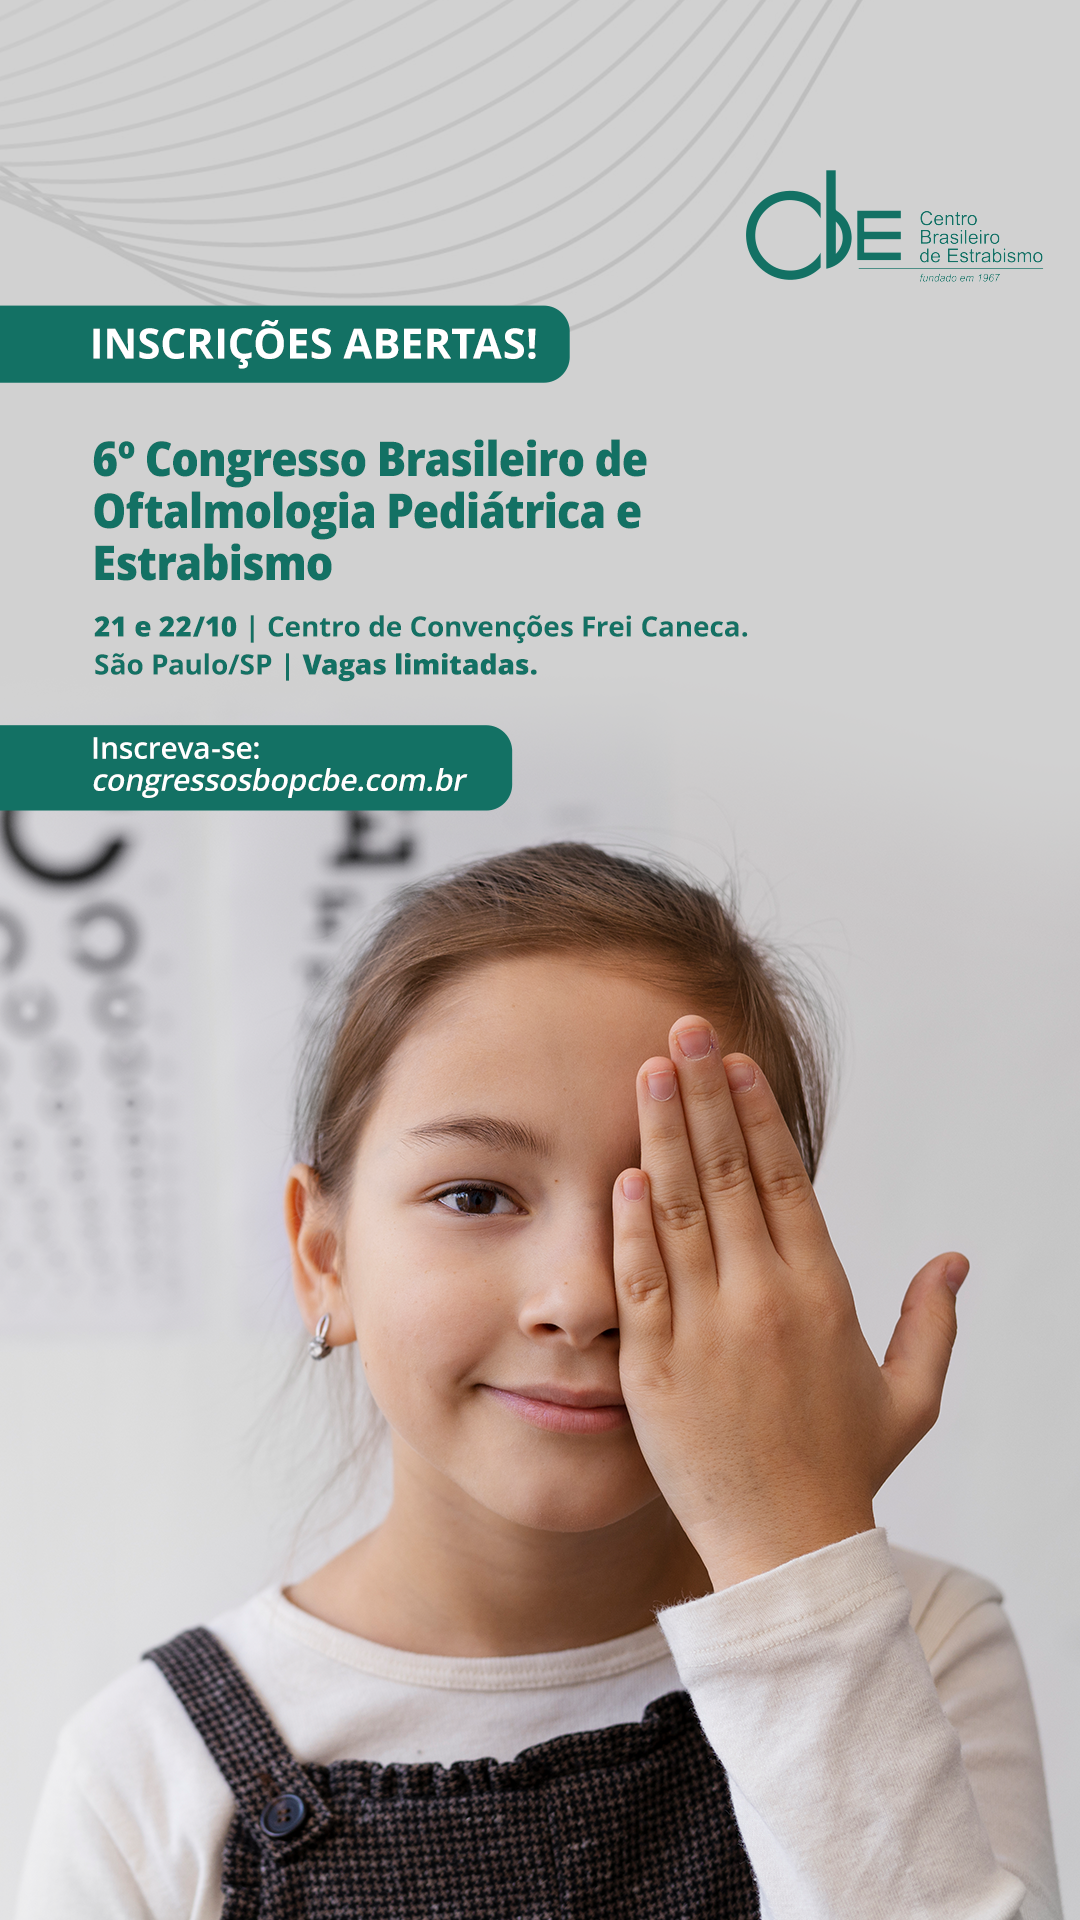 6º Congresso Brasileiro de Oftalmologia Pediátrica e Estrabismo